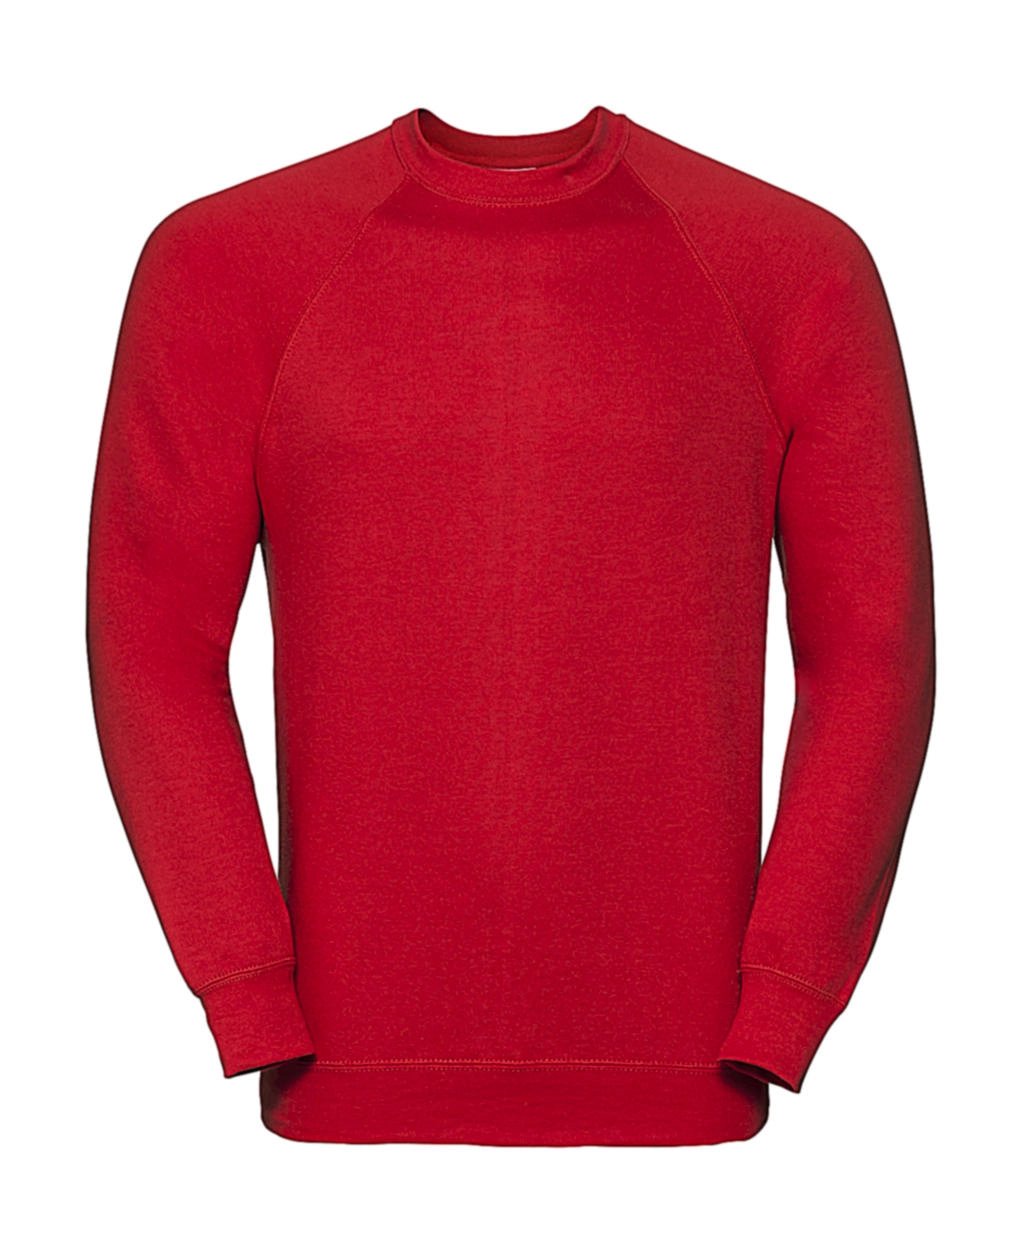 Classic Raglan Sweatshirt zum Besticken und Bedrucken in der Farbe Bright Red mit Ihren Logo, Schriftzug oder Motiv.